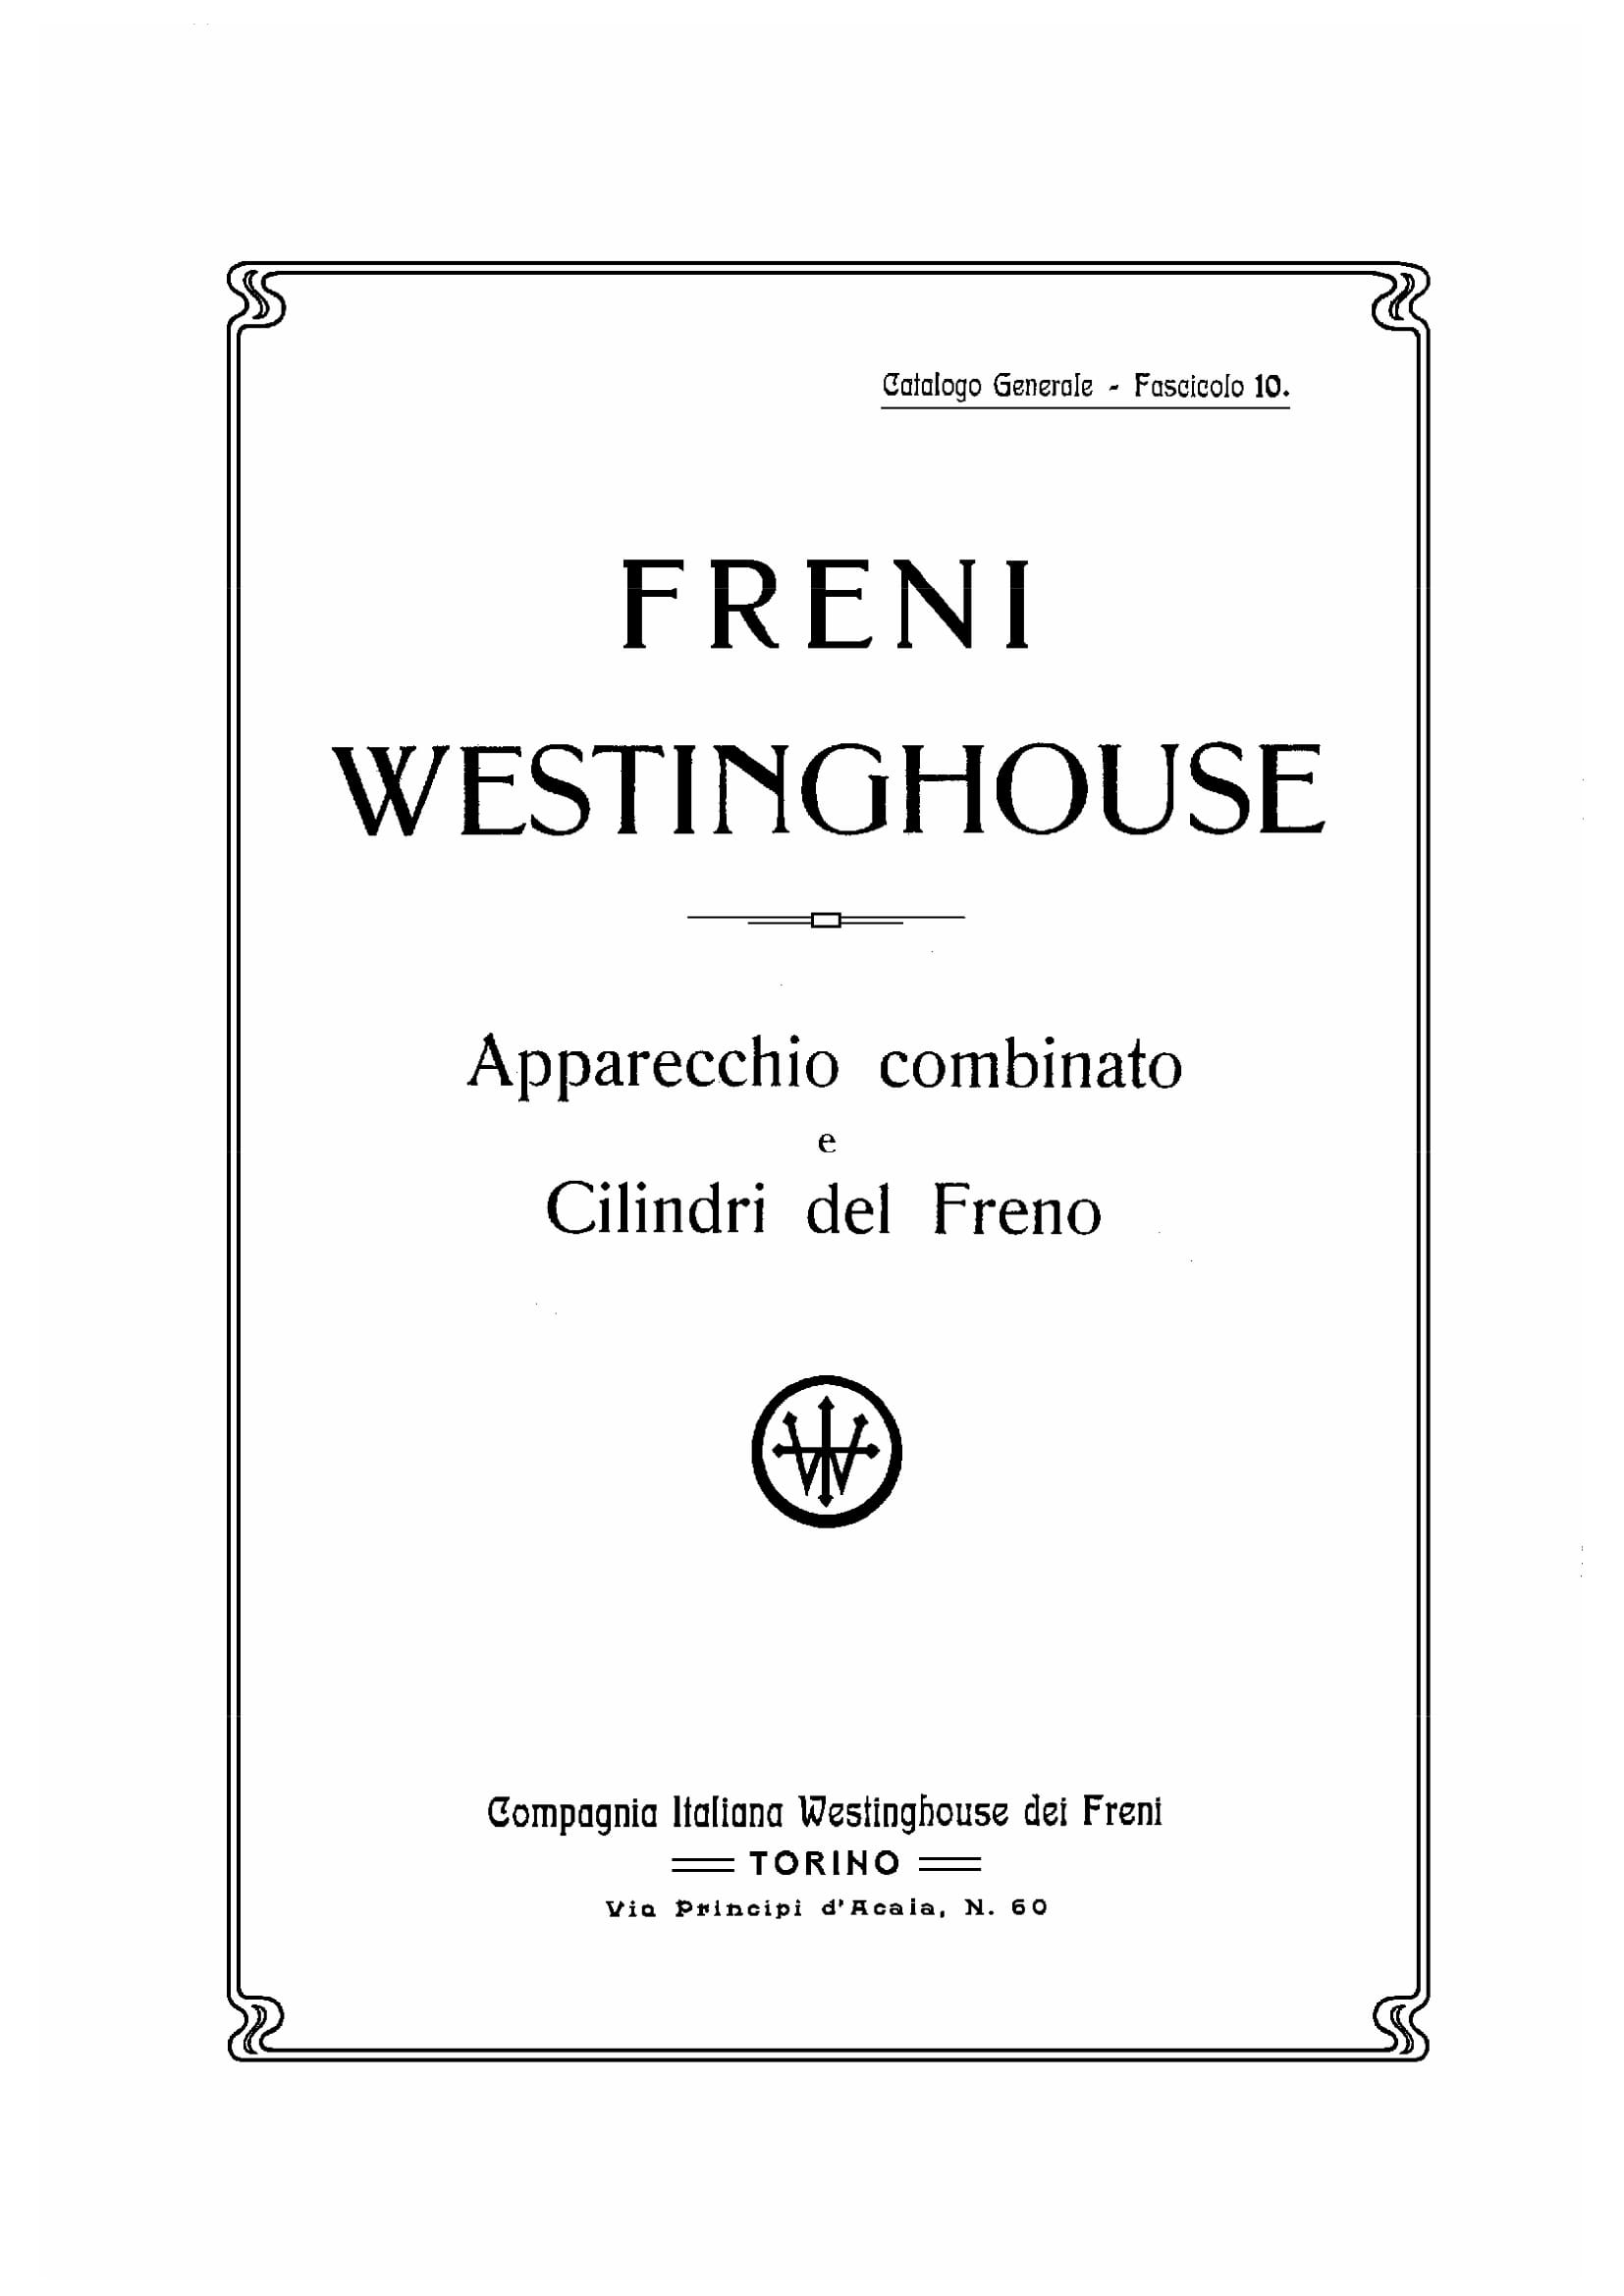 CATALOGO WESTINGHOUSE-198